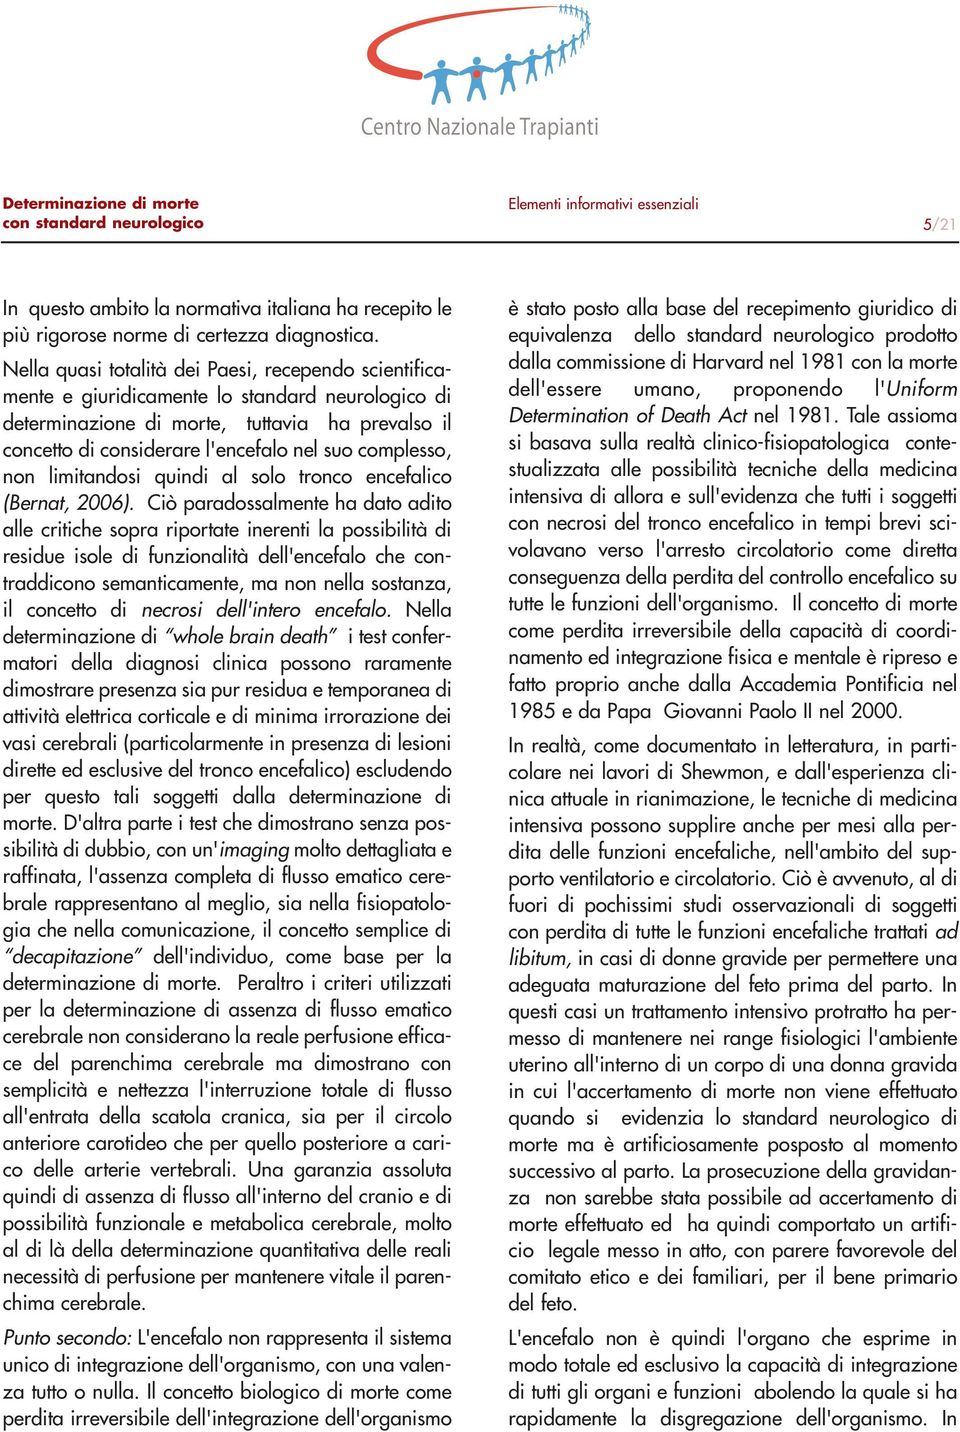 complesso, non limitandosi quindi al solo tronco encefalico (Bernat, 2006).